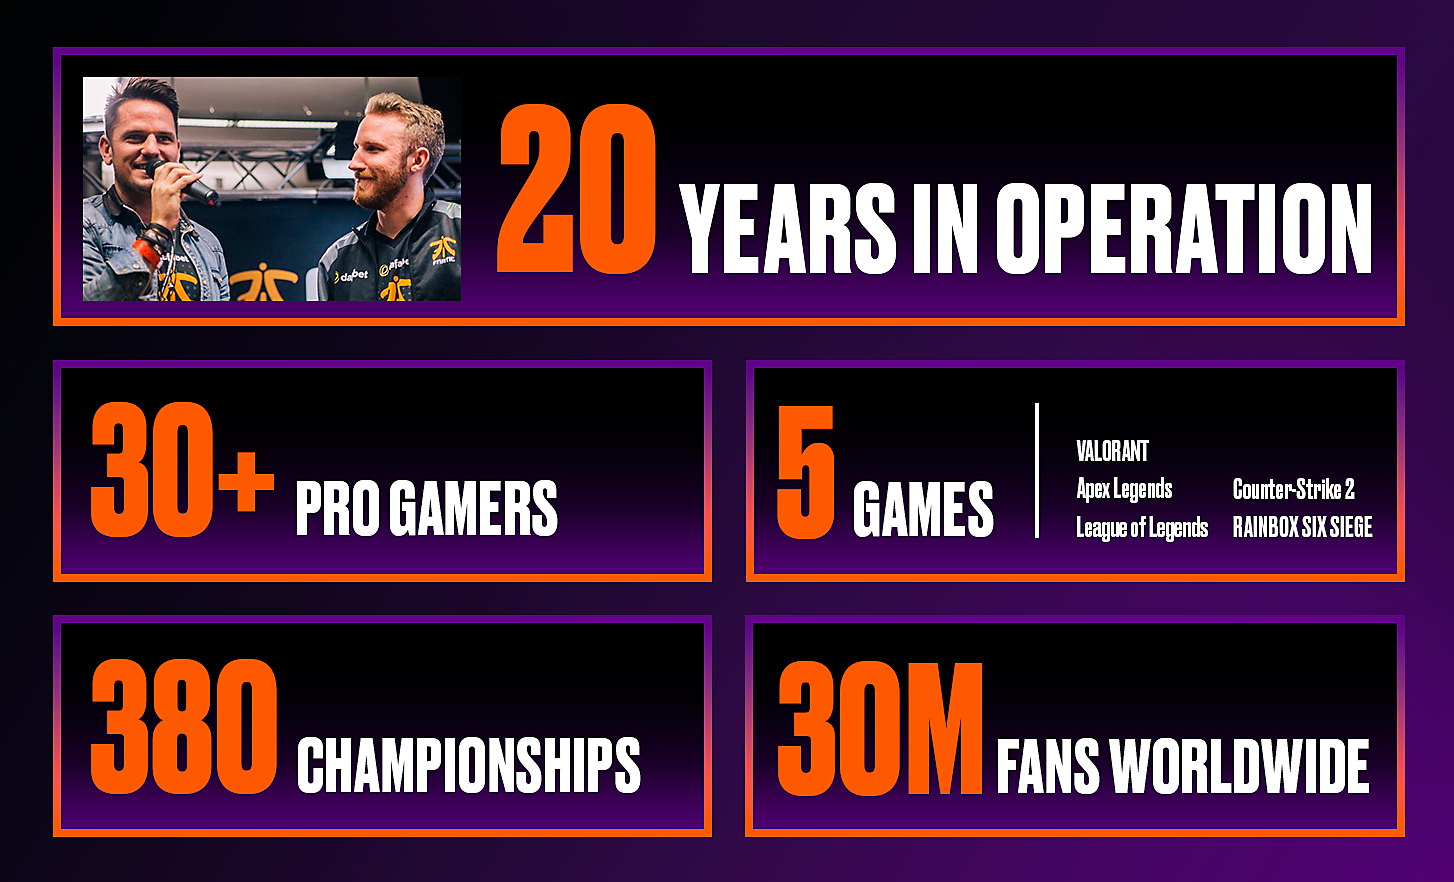 5 caixas com várias estatísticas da Fnatic, incluindo os anos de atividade e o número de pro gamers, jogos, campeonatos e fãs